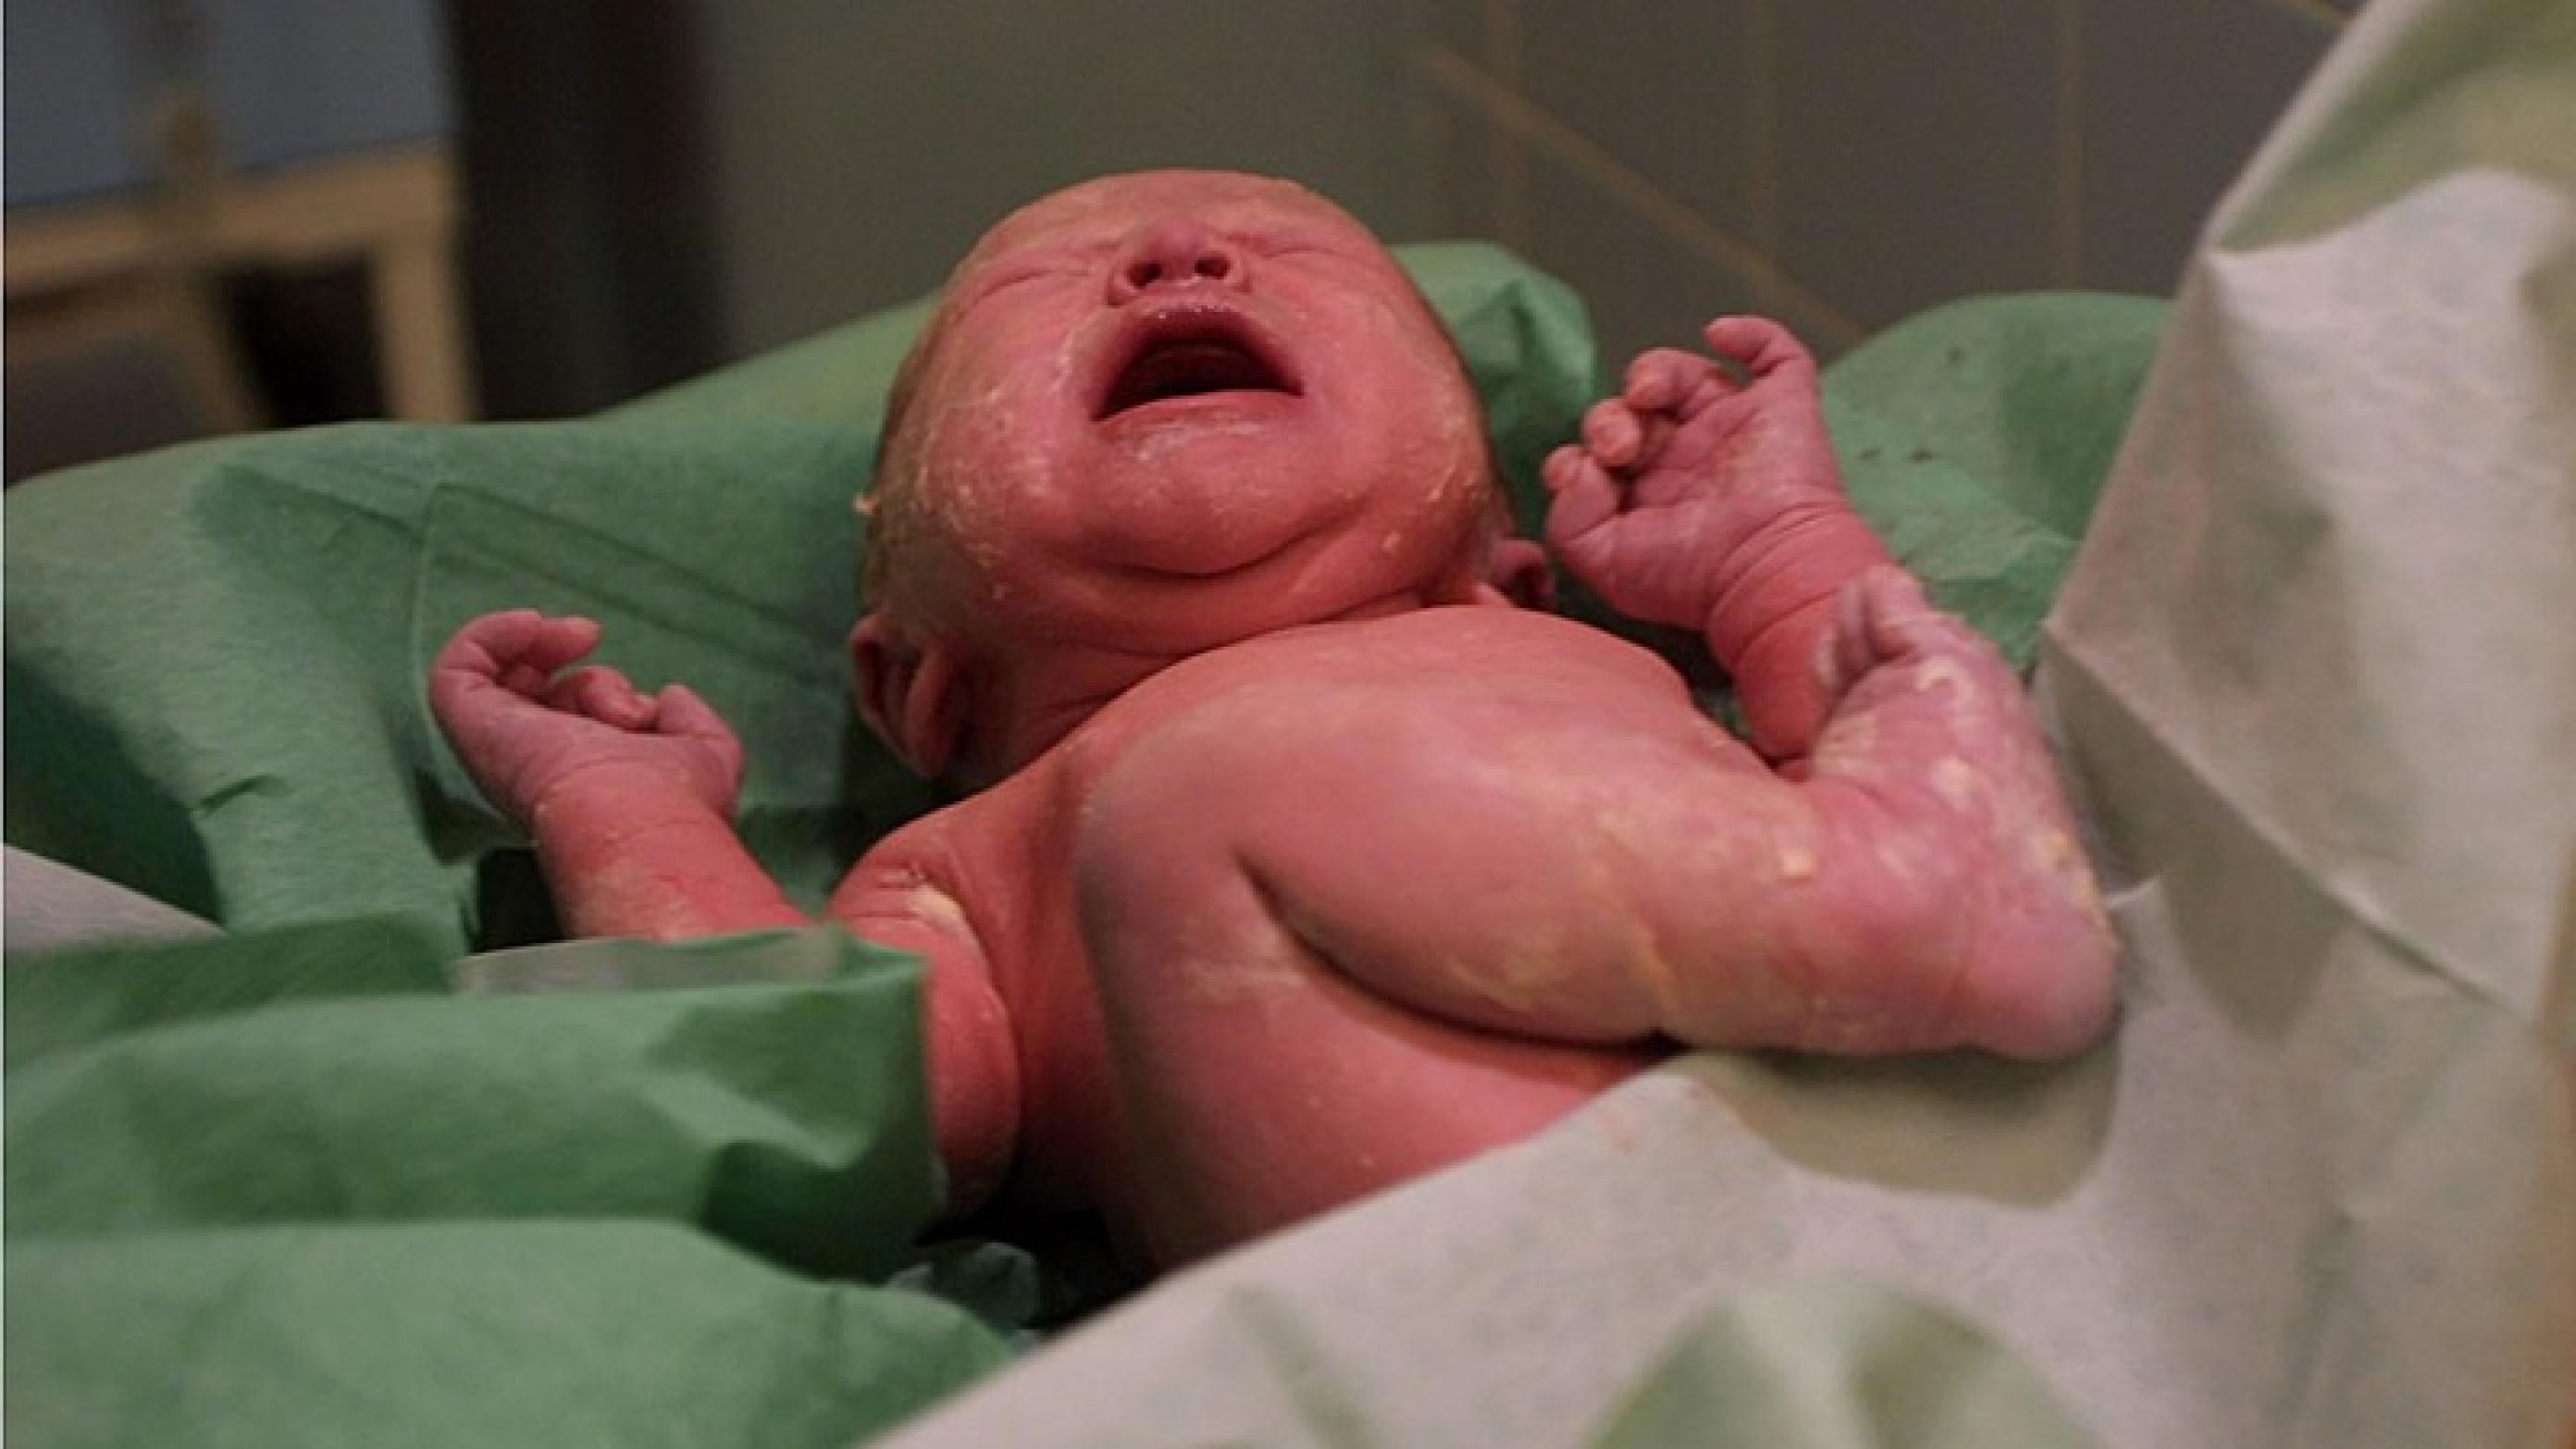 Fra den 1. februar kan nyfødte sammen med deres forældre blive sendt hjem efter 2-4 timer efter fødslen på Regionshospital Nordjylland i Hjørring, hvis ellers graviditet og fødsel har været ukompliceret. Foto: Colourbox